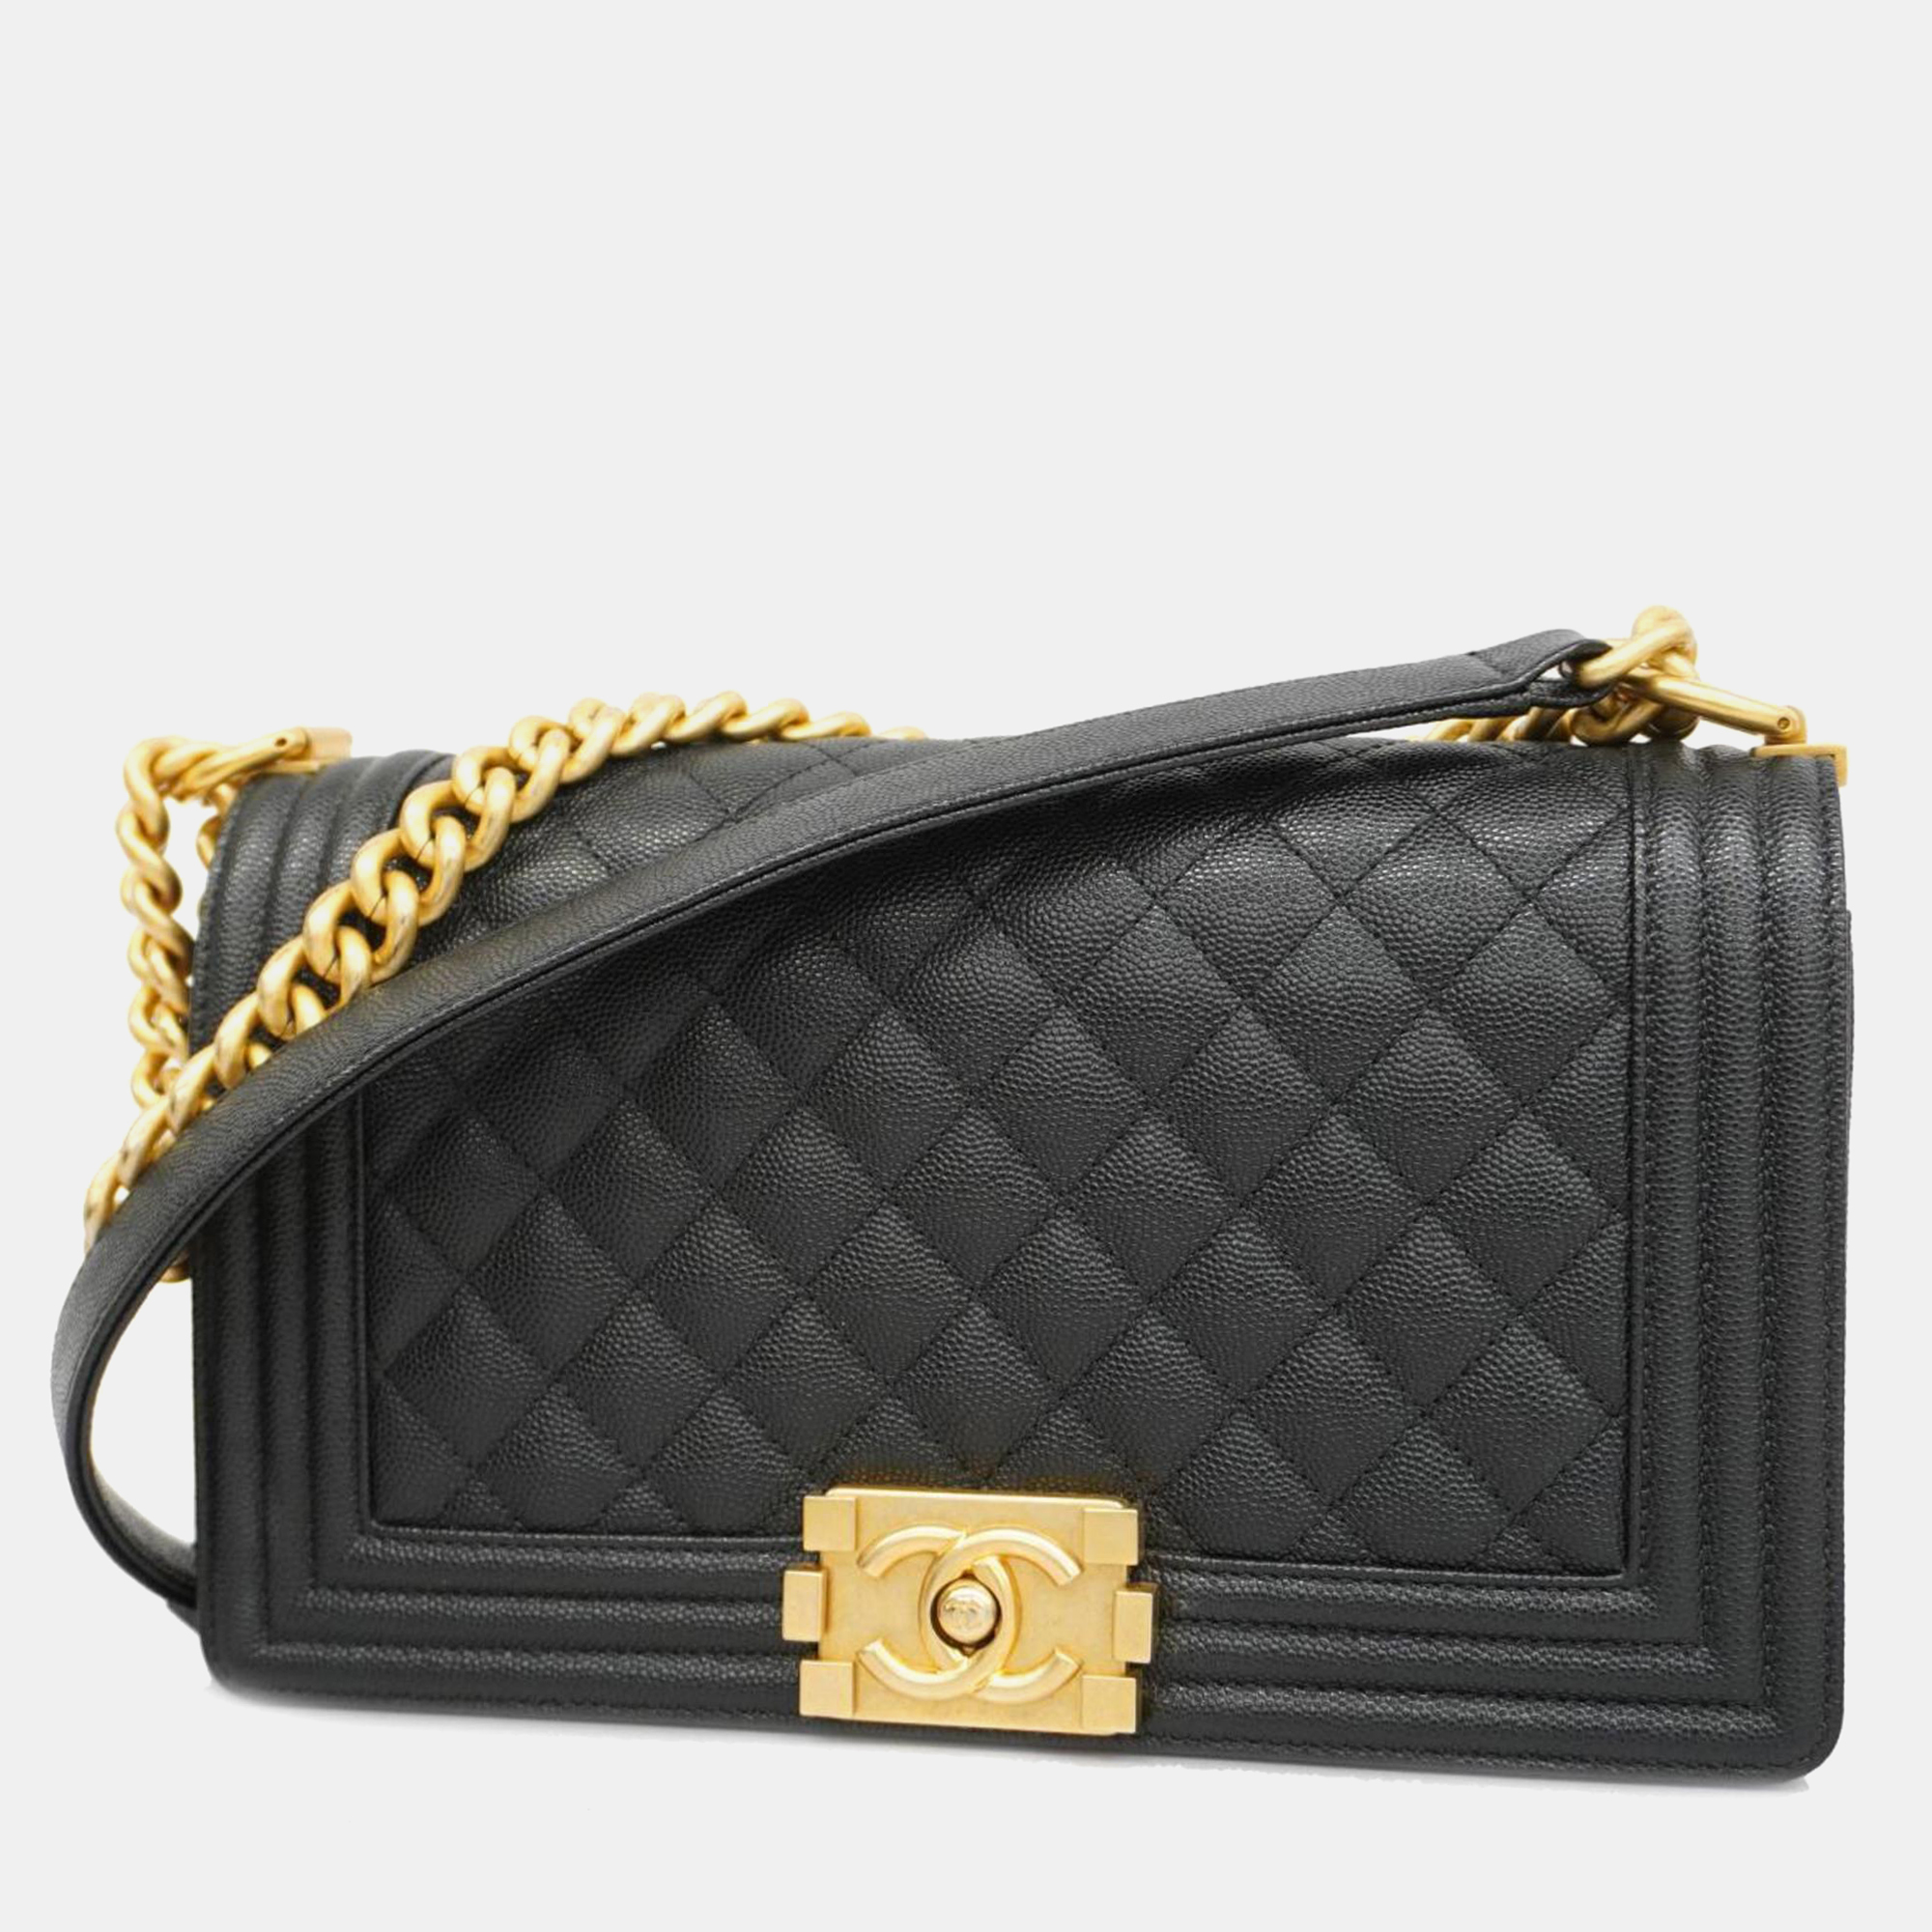 Chanel black caviar leather medium boy shoulder bags